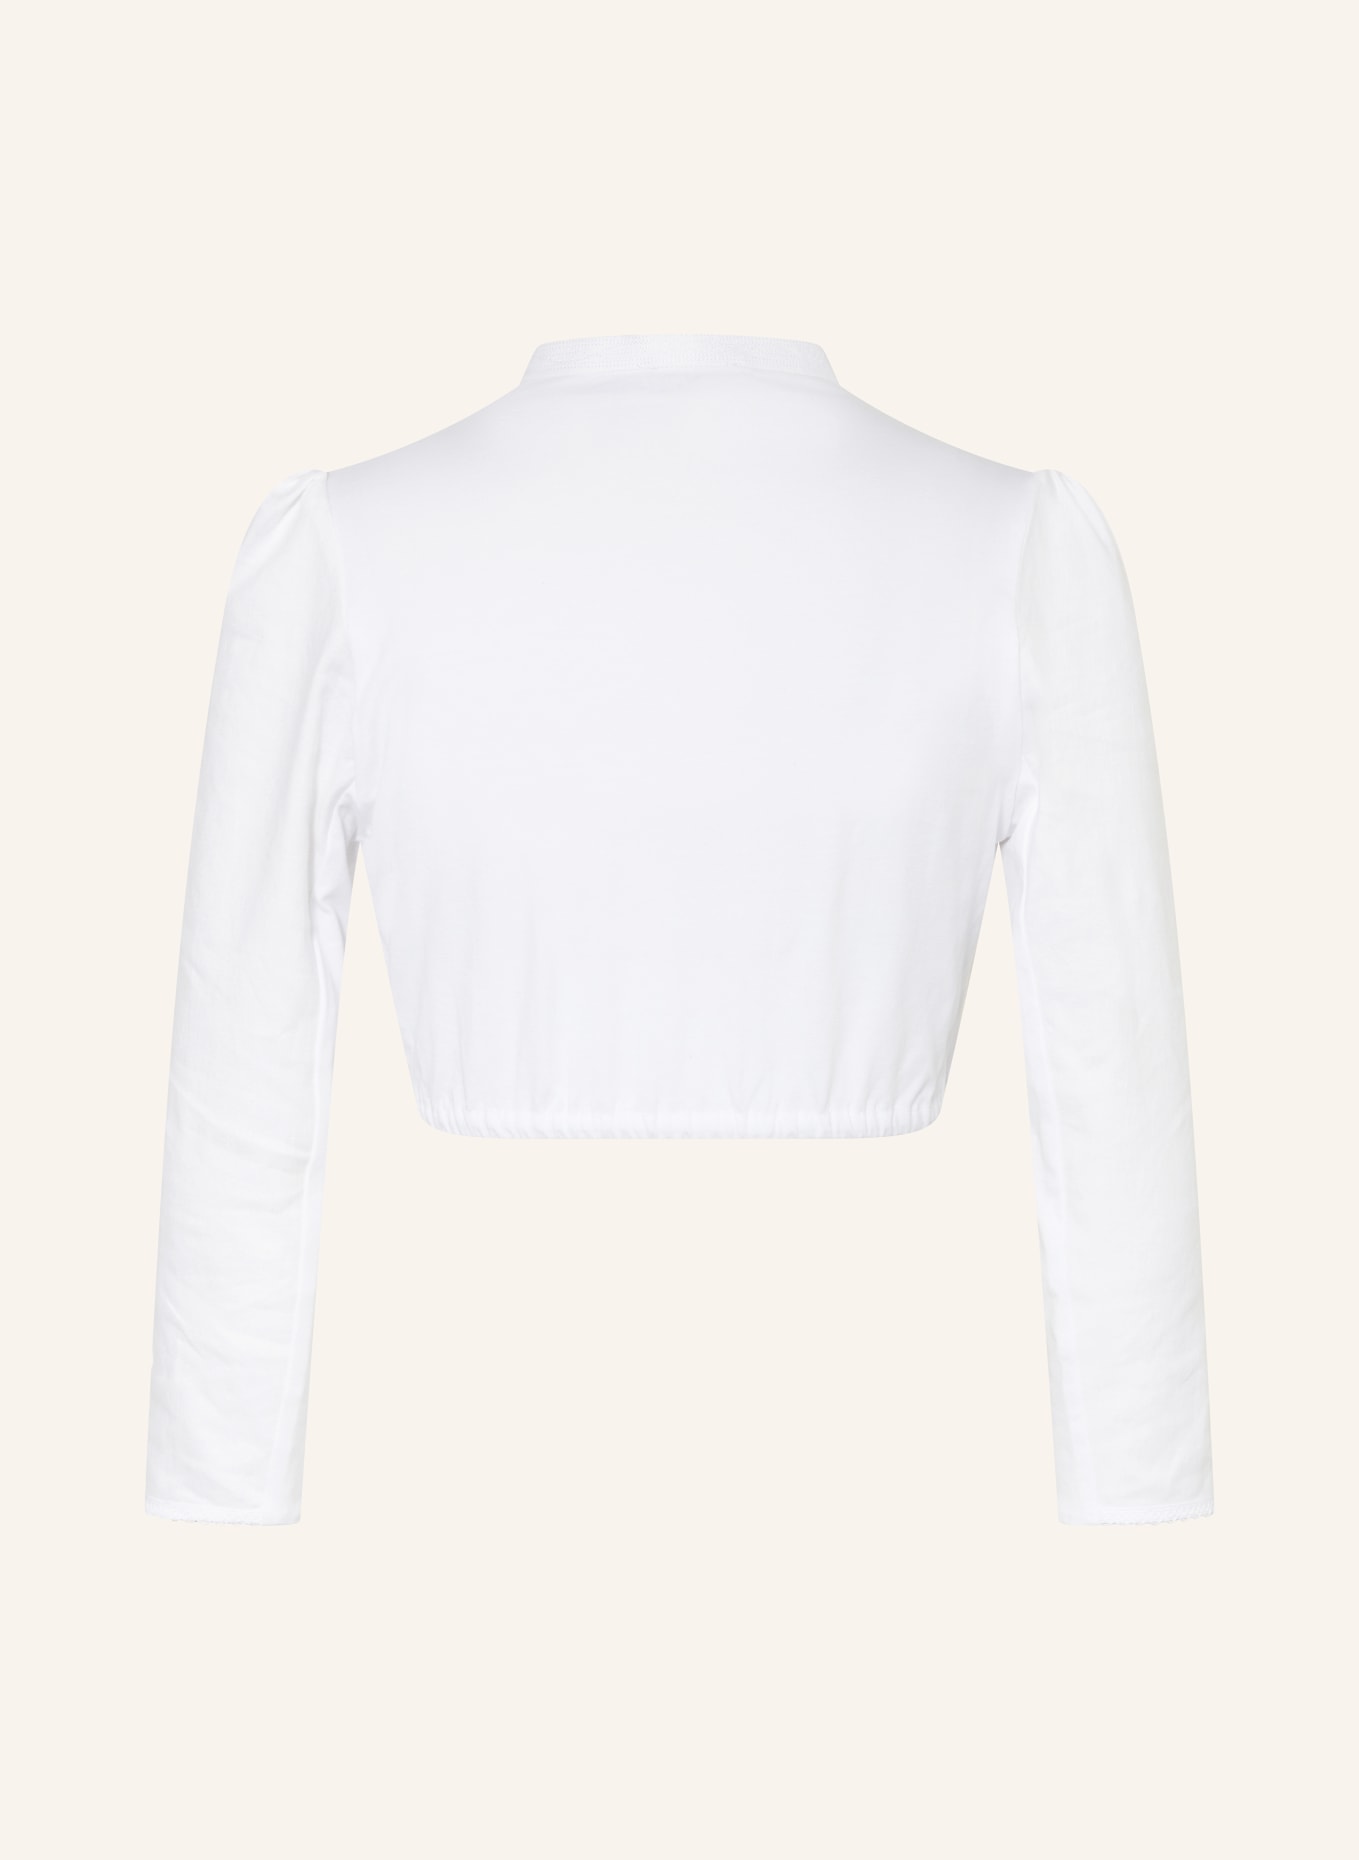 Gottseidank Dirndl blouse POMPADOUR with linen, Color: 100 reiweiß (Image 2)